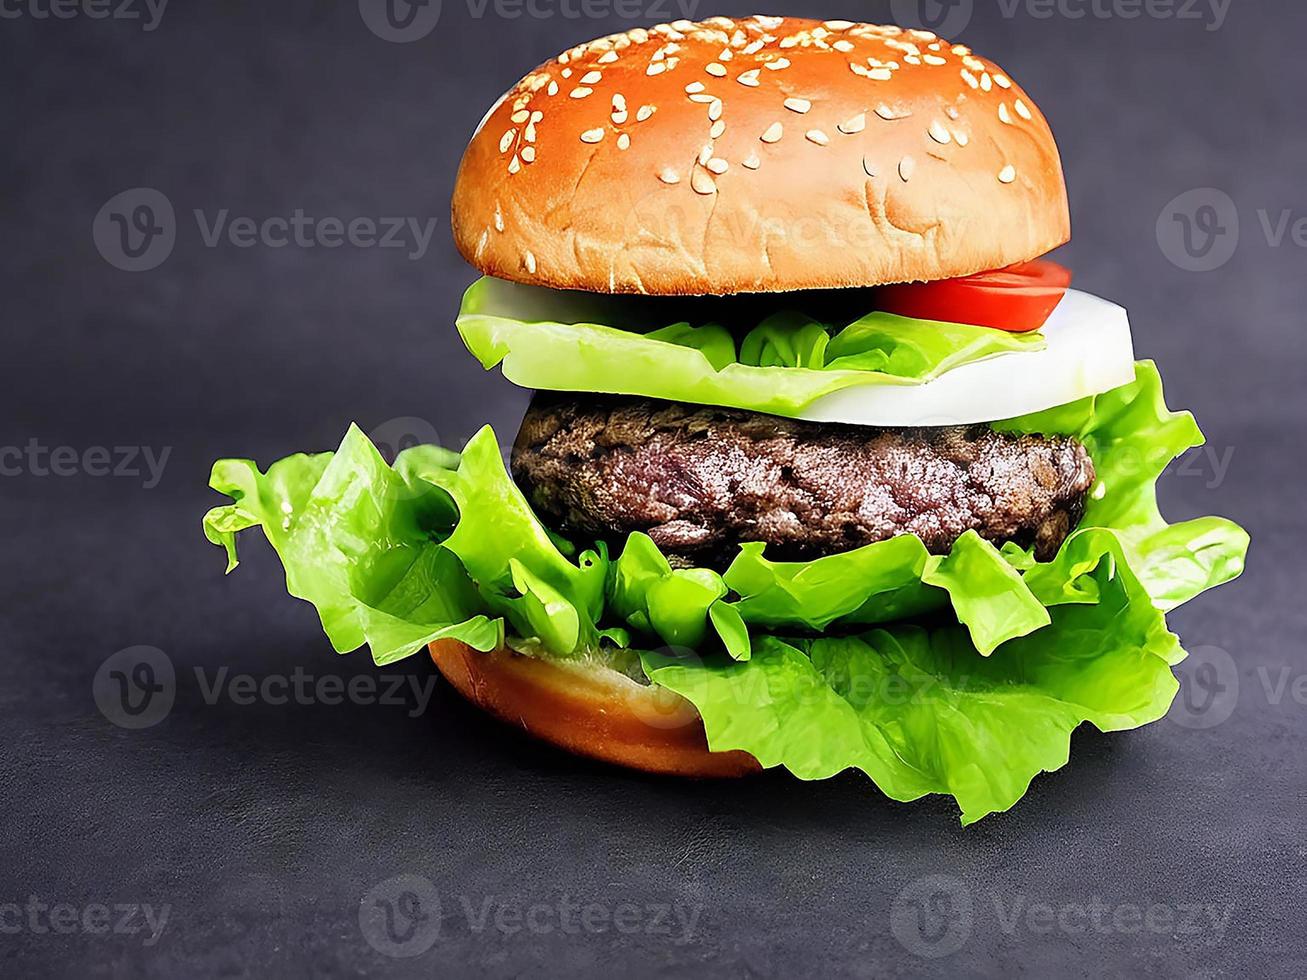 deliciosa hamburguesa casera gourmet fresca. foto